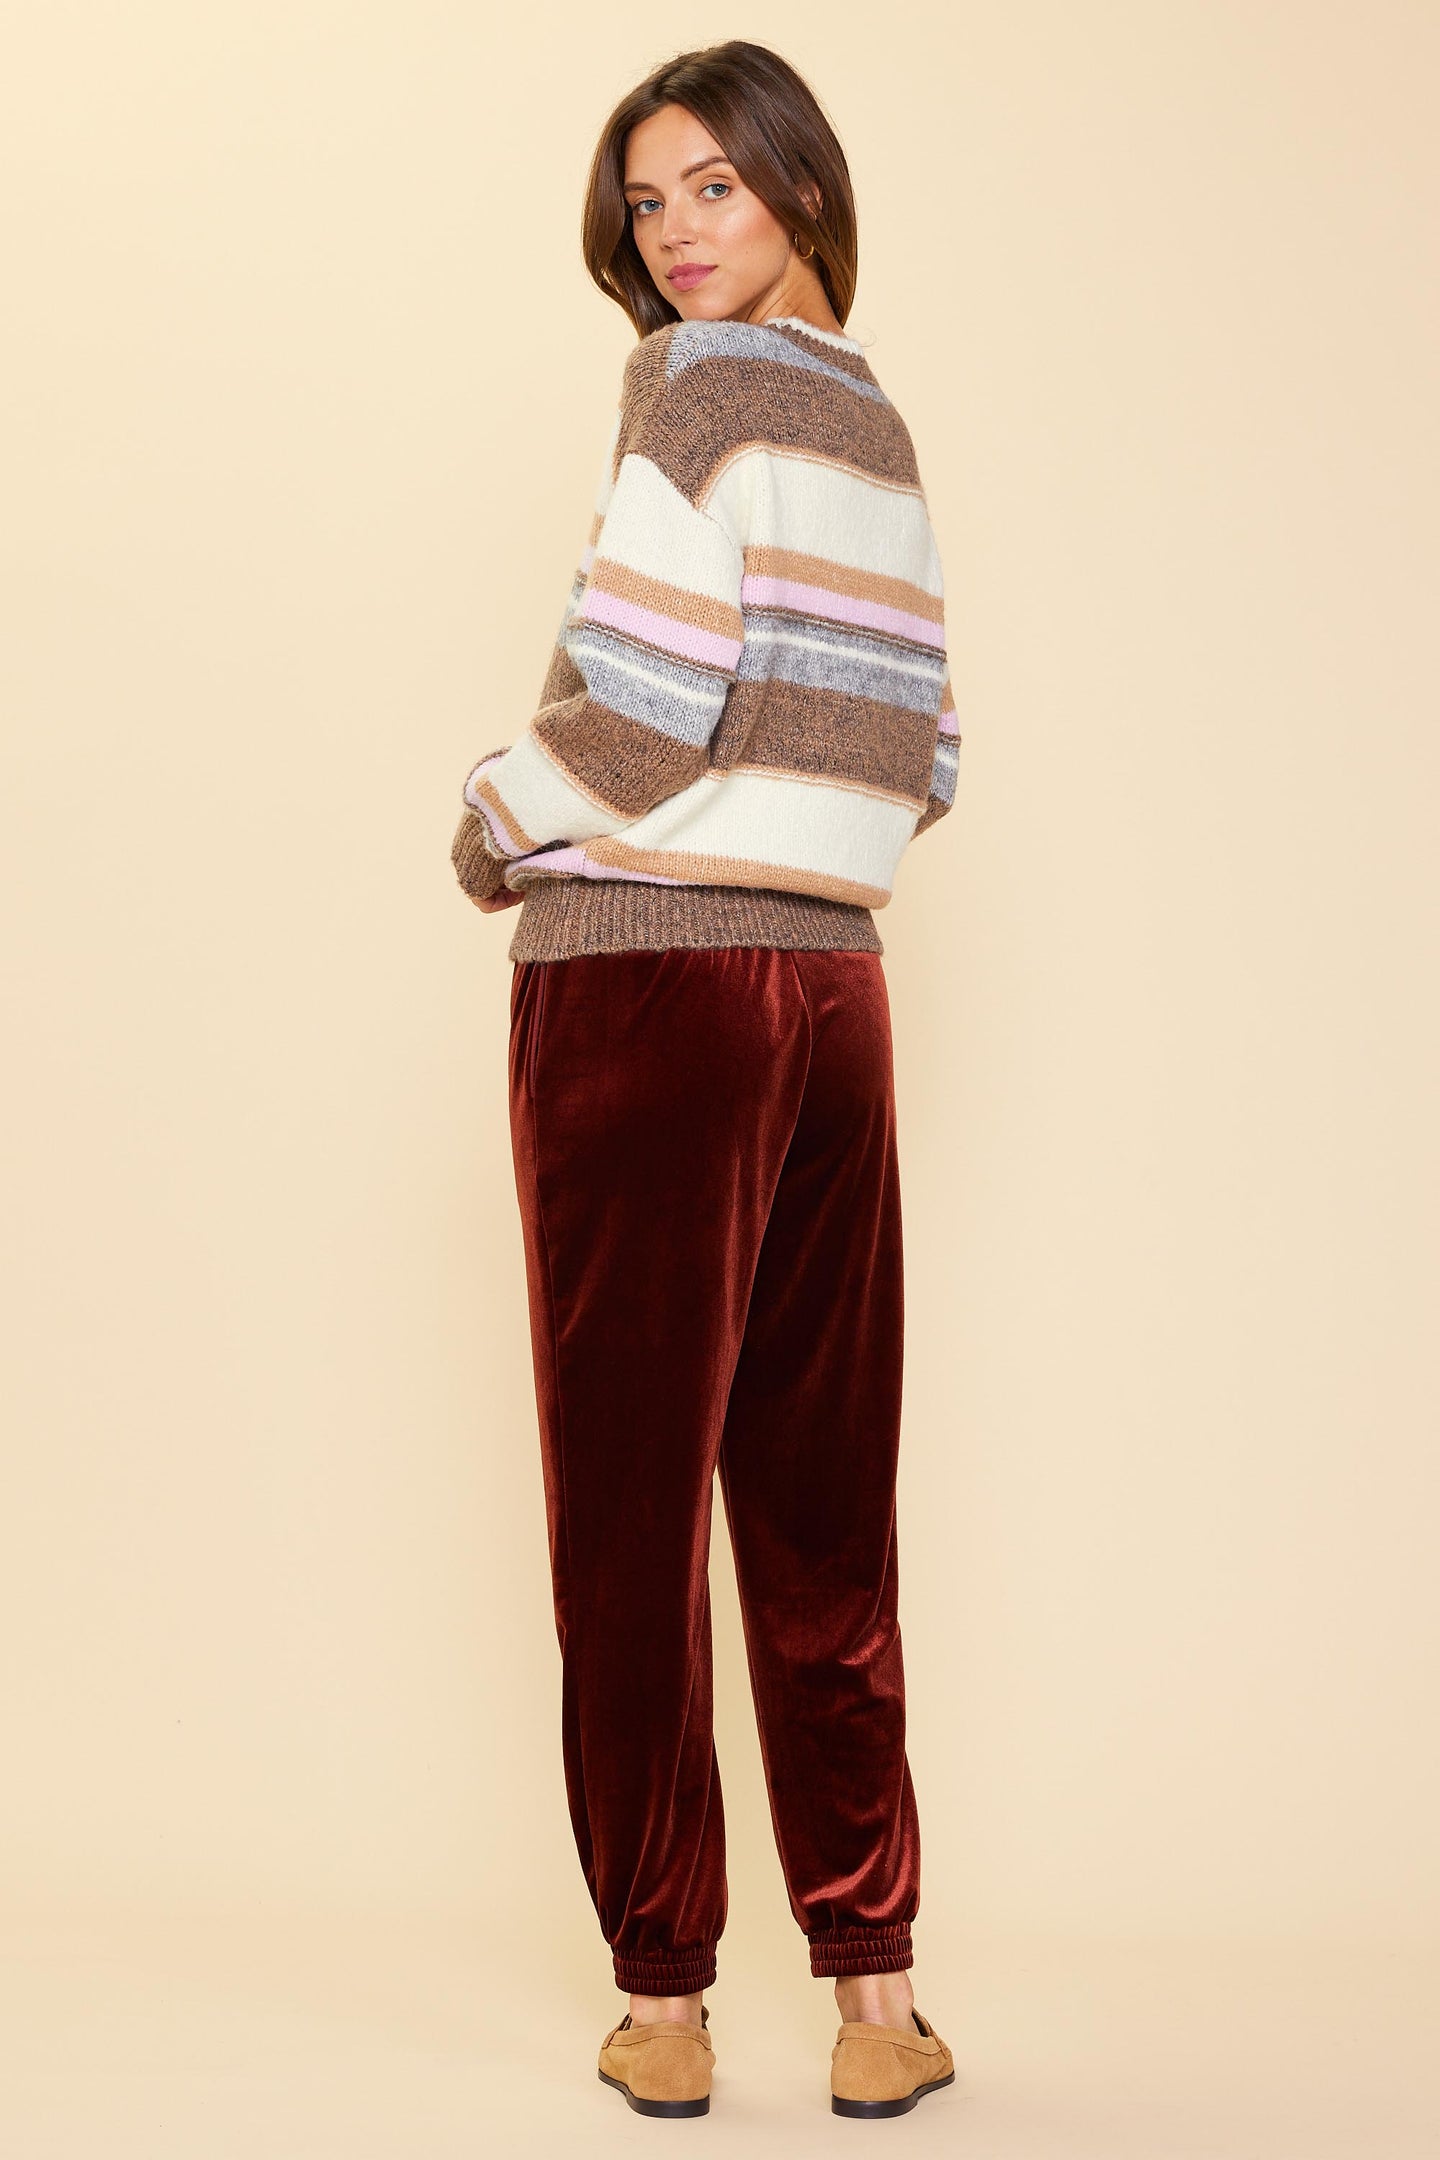 Mulitcolor Striped Sweater